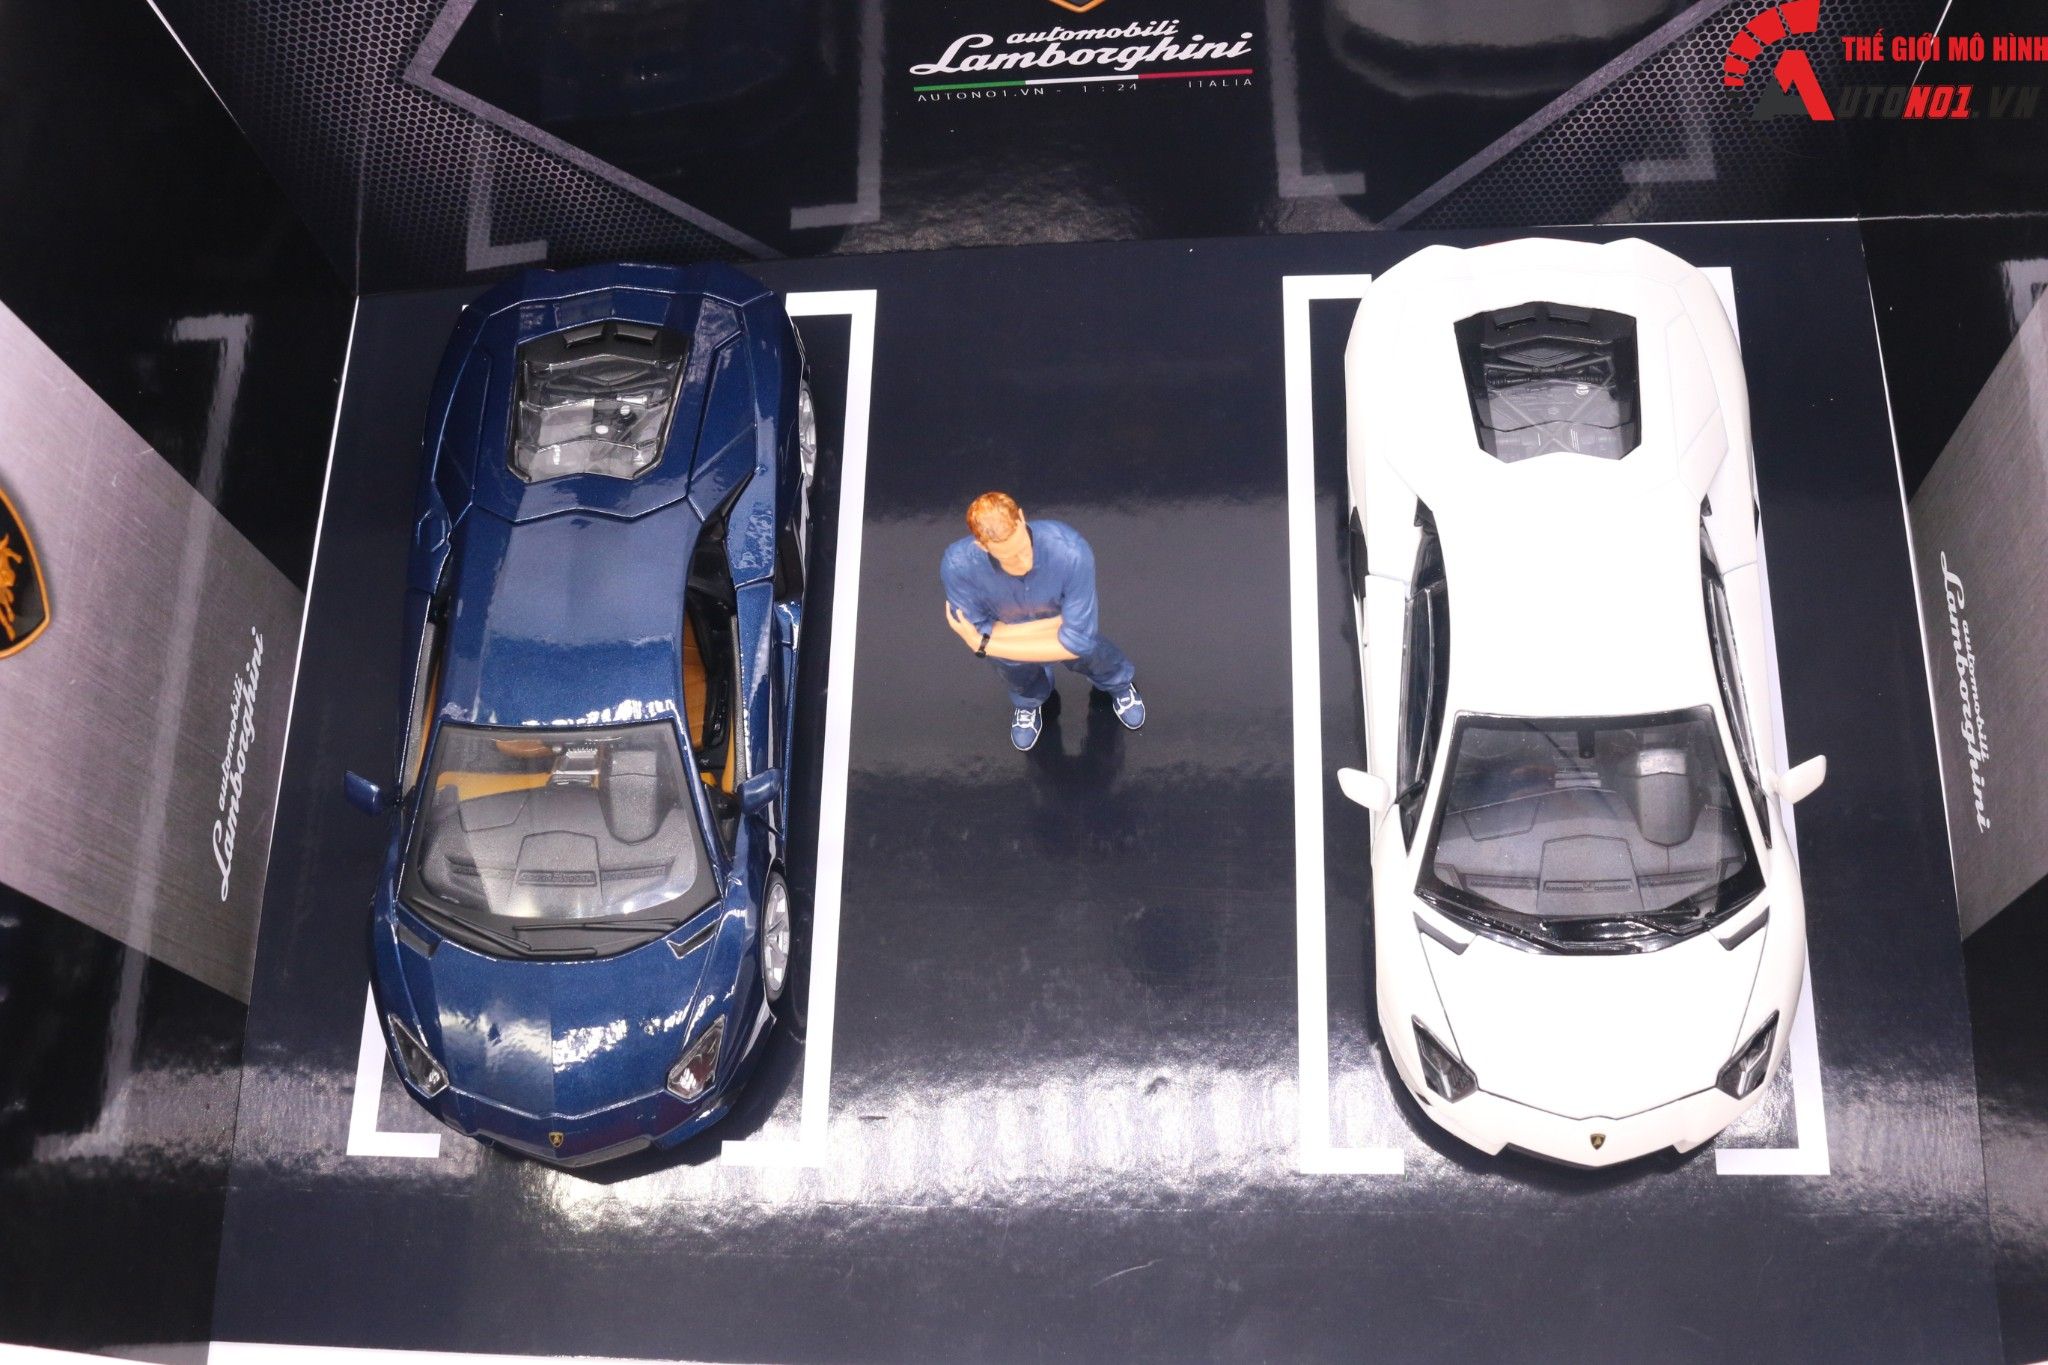  Diorama 1:24 Showroom trưng bày Lamborghini cho xe tỉ lệ 1:24 kích thước 35X25X15cm 4 tấm lắp ghép formex 5li DR010B 